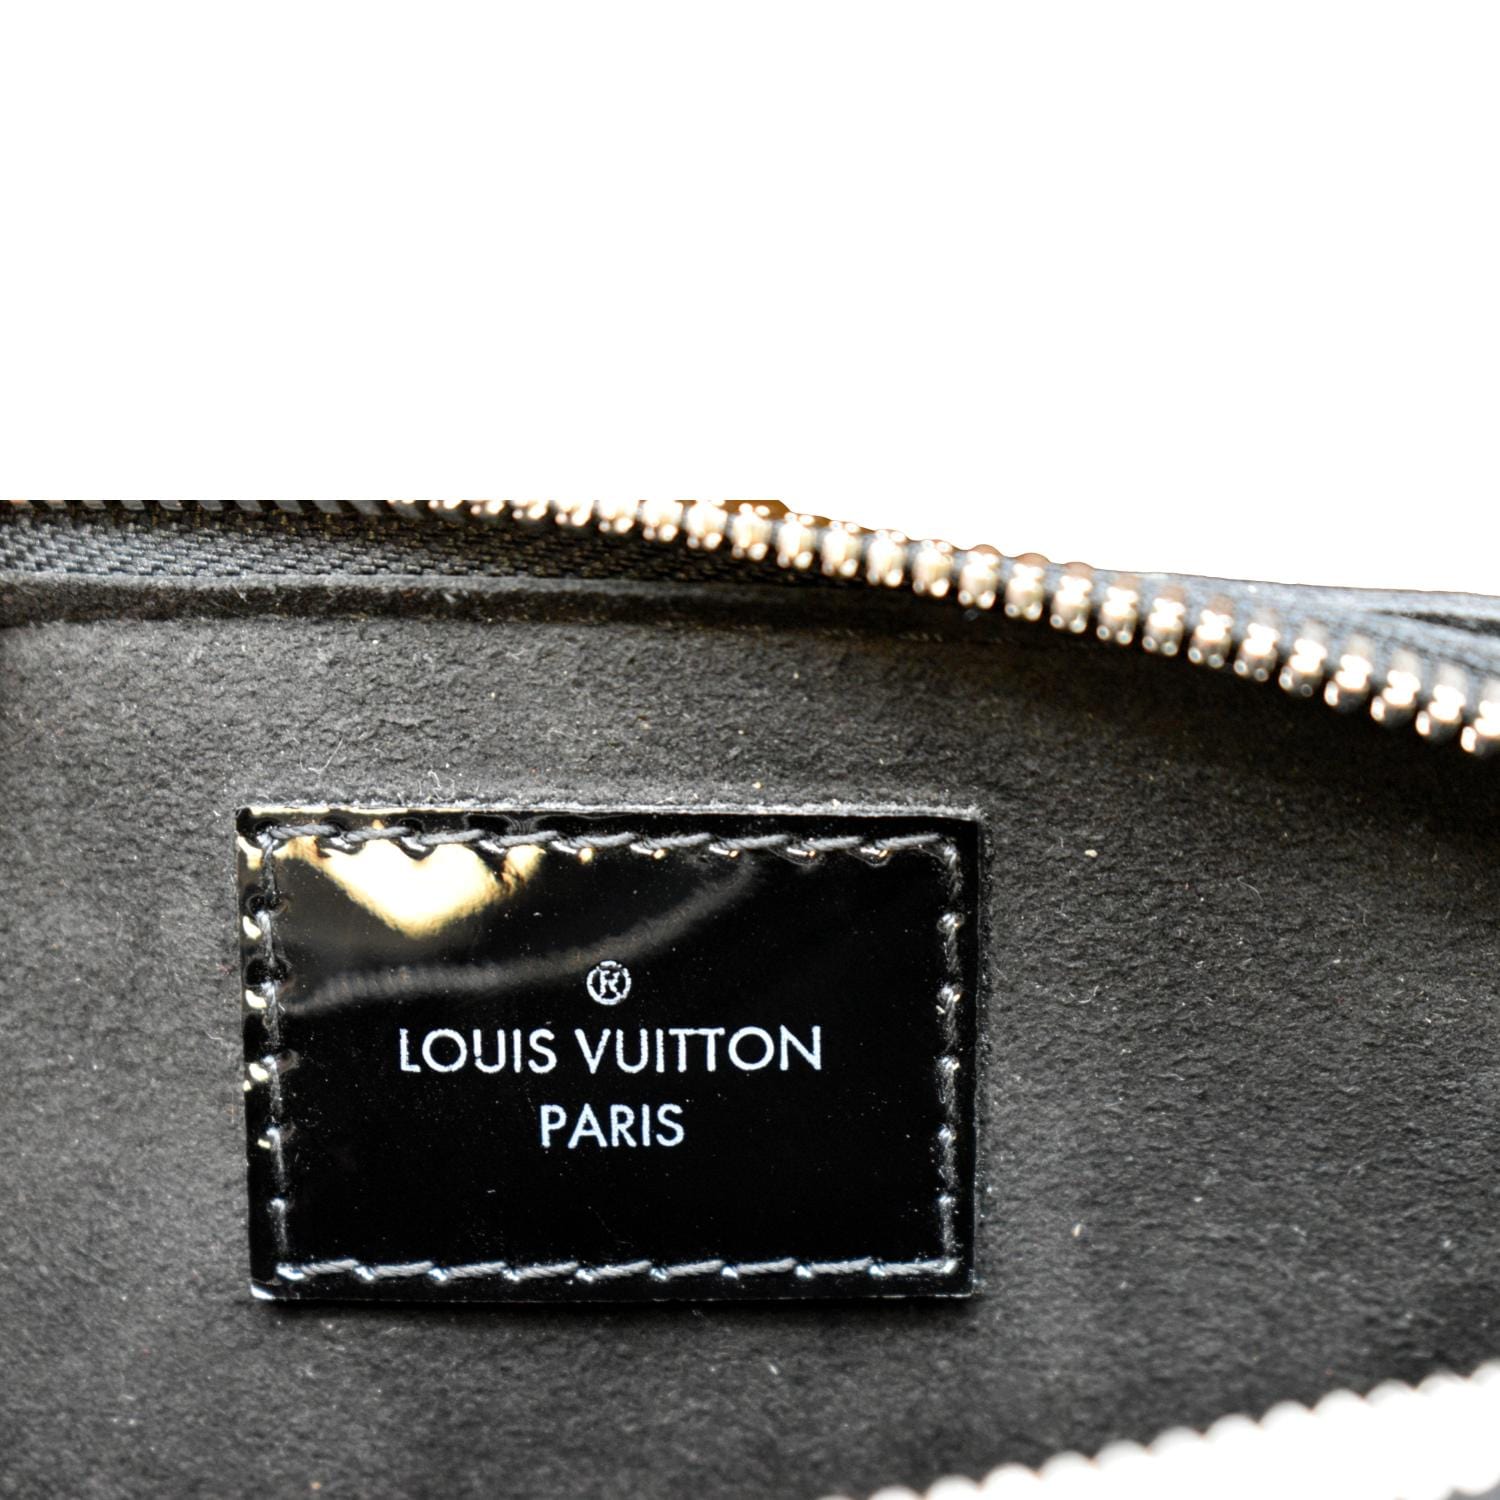 Bag Review: Louis Vuitton Black Epi Alma BB